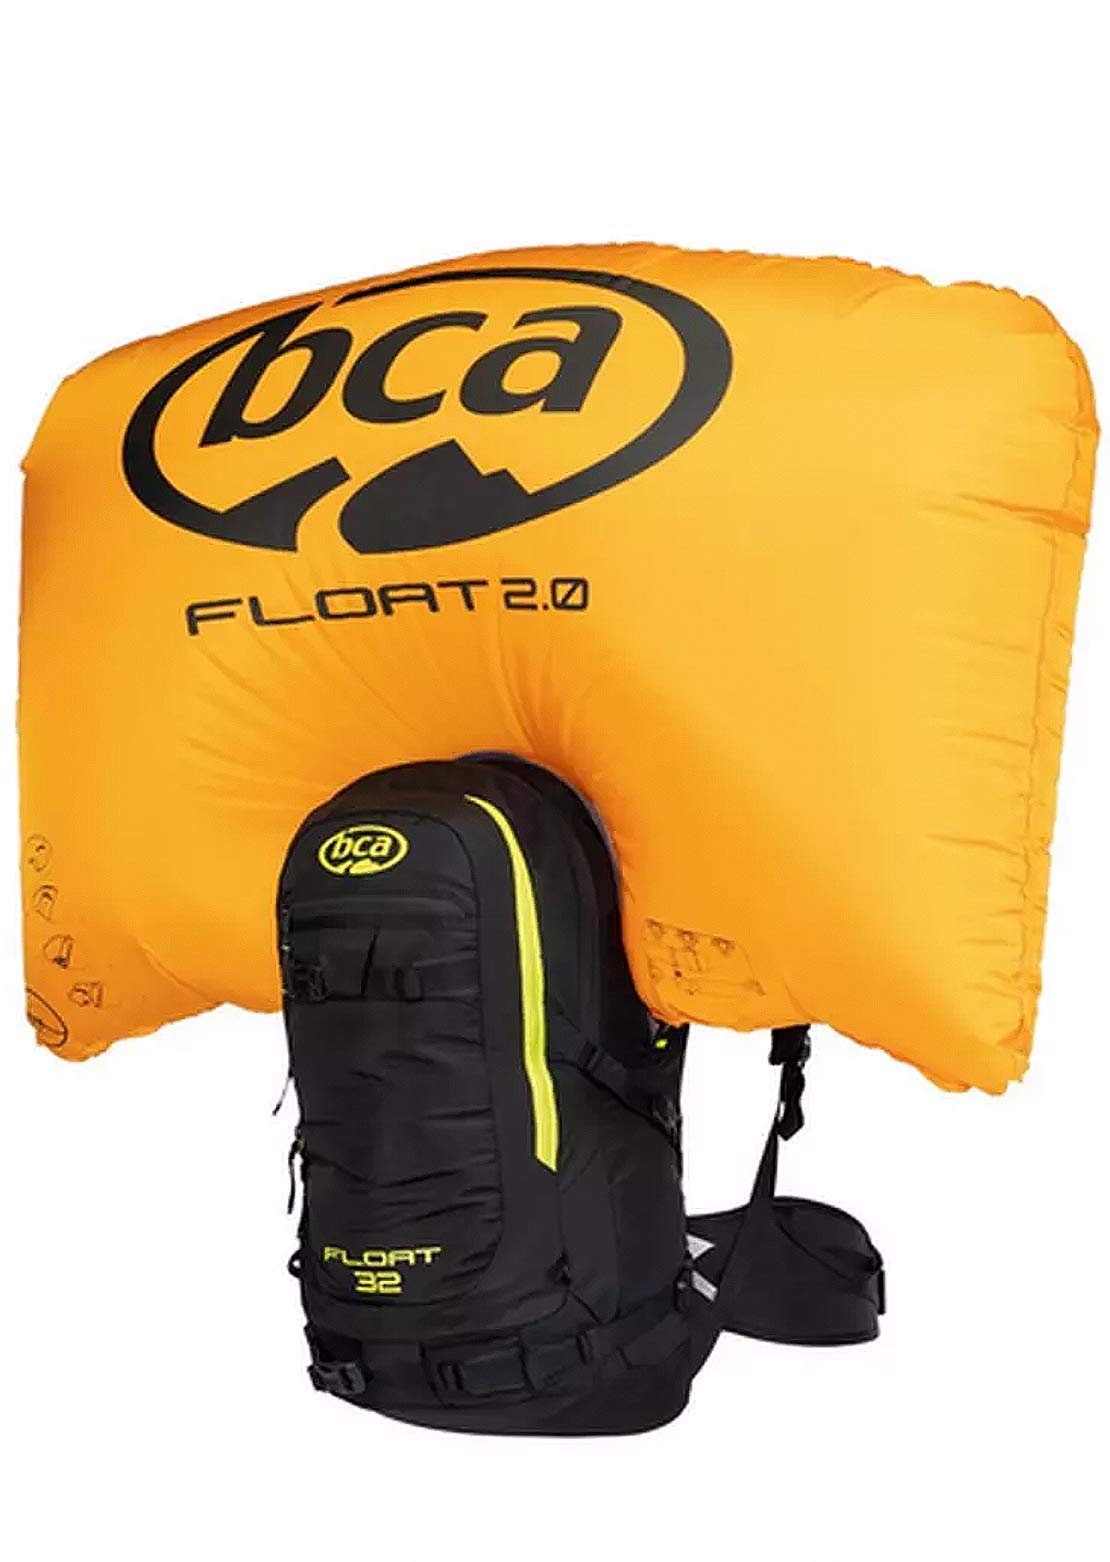 BCA Airbag d&#39;avalanche Float 32 pour hommes